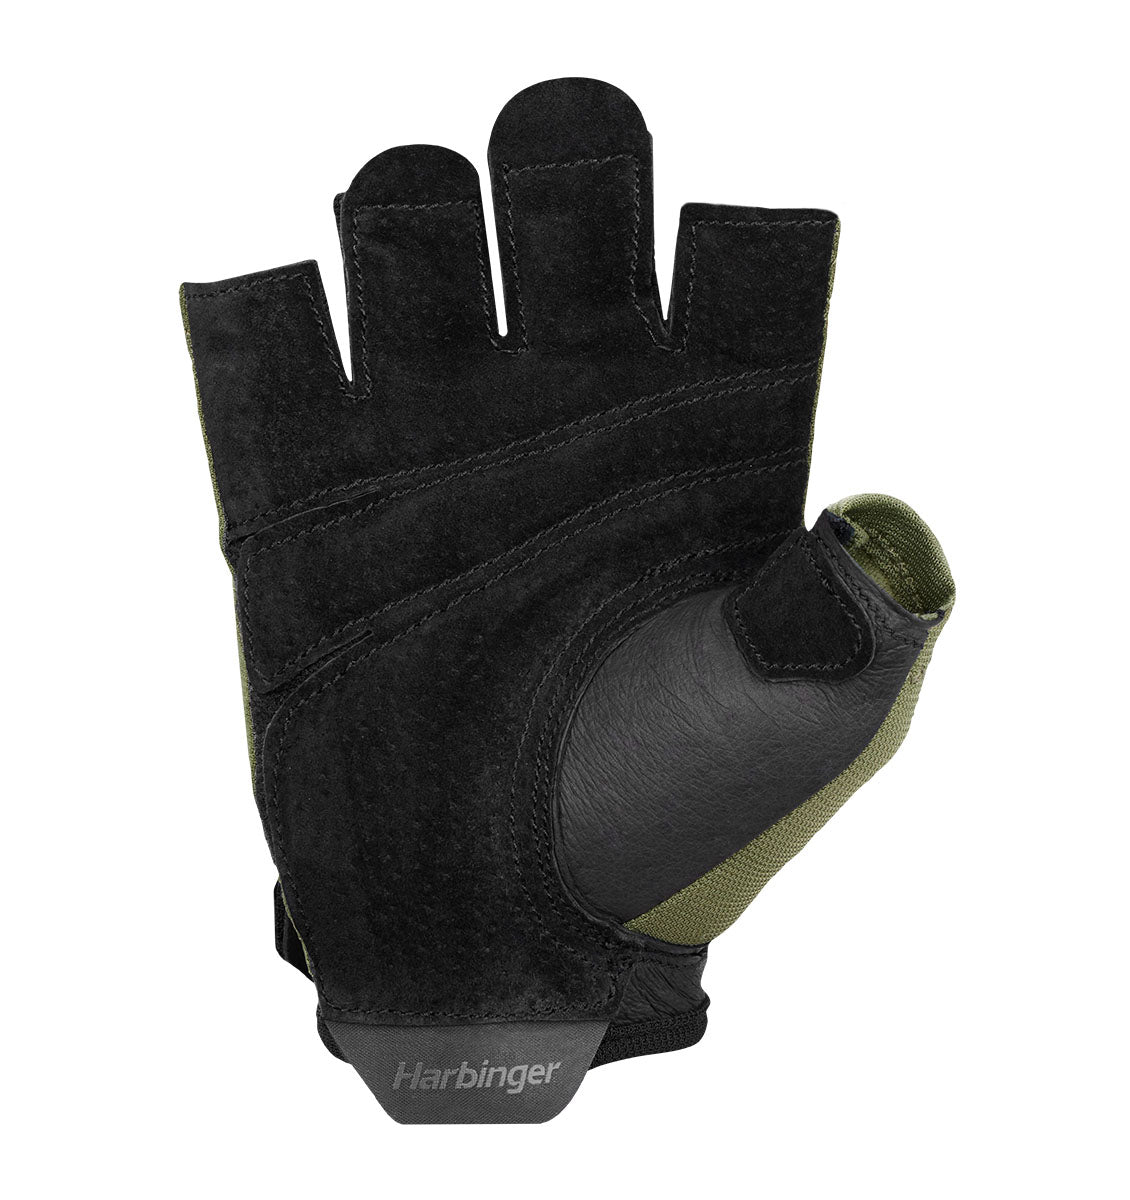 Harbinger Power Gloves 2.0 - Unisex - Green - 4